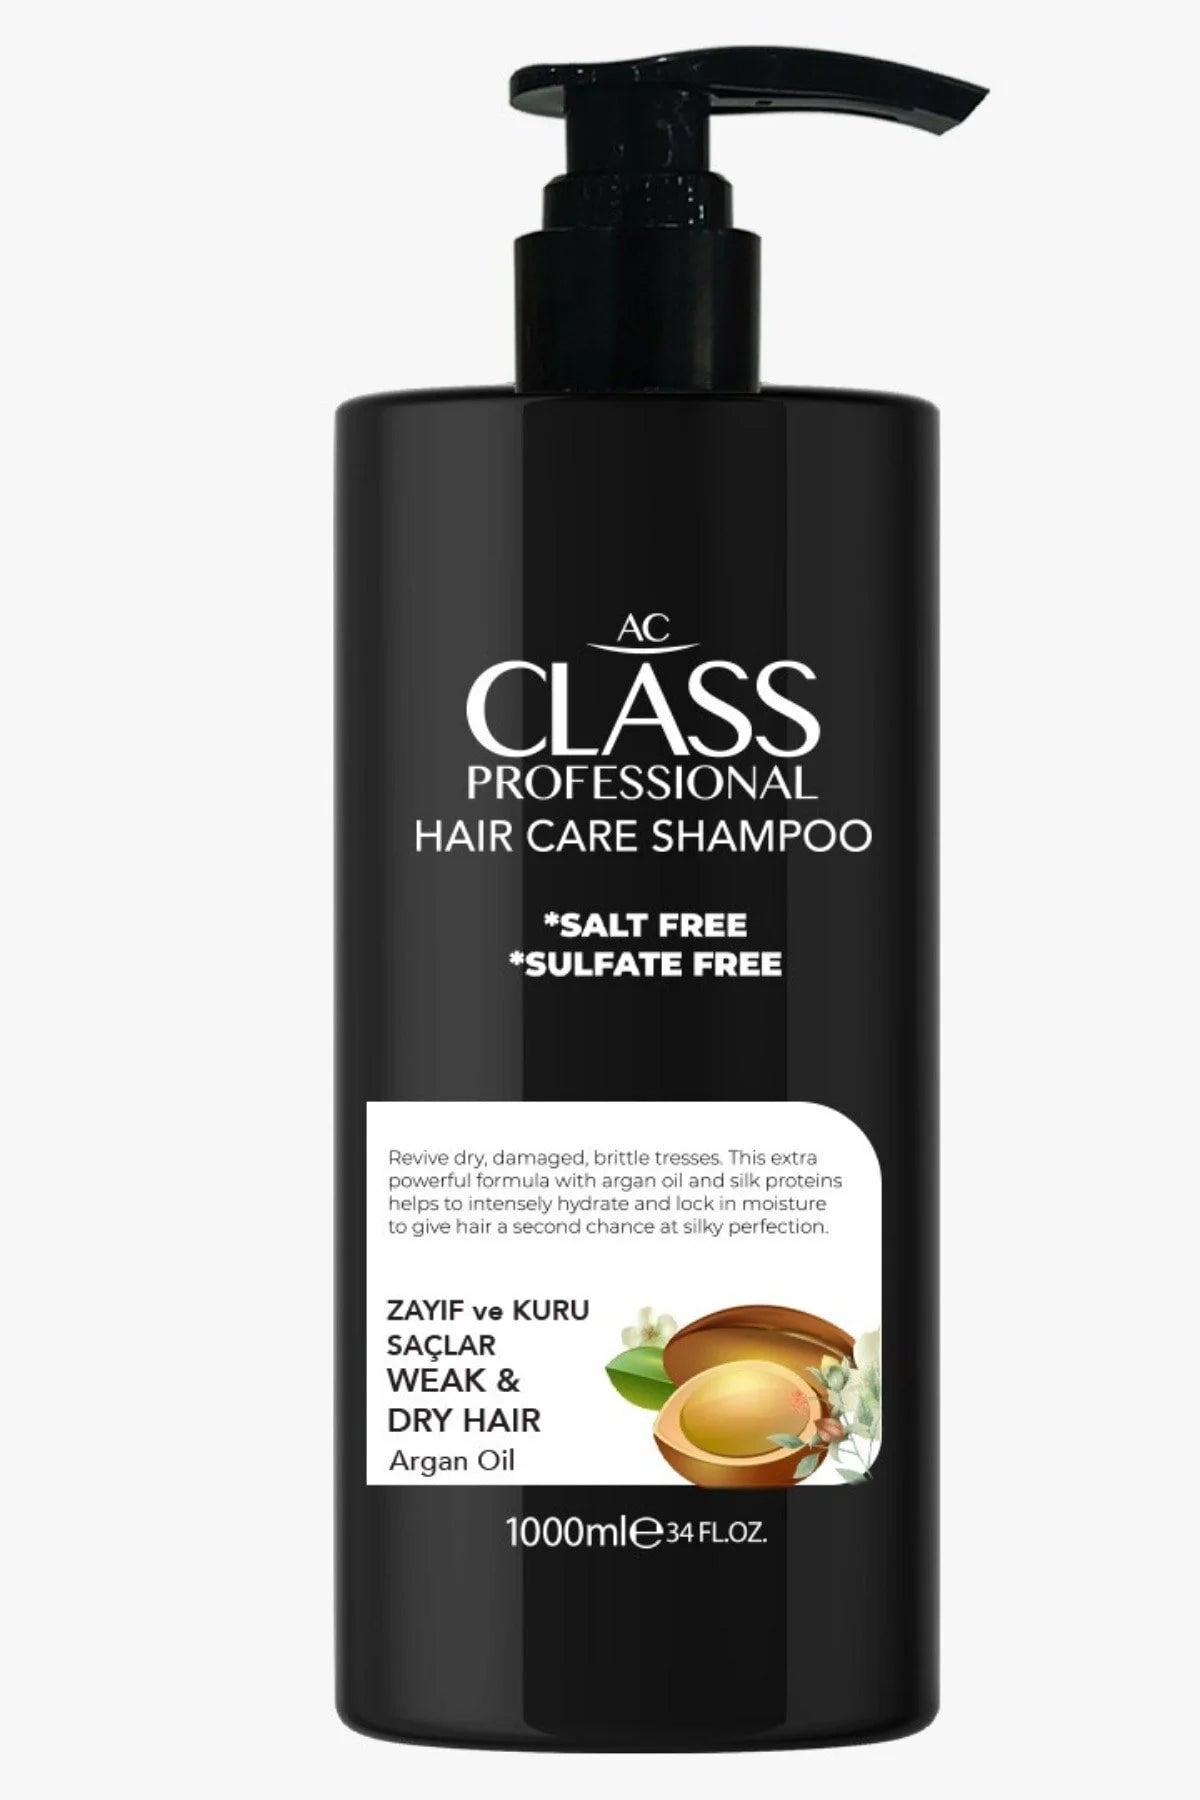 AC Class Argan Oil (Weak & Dry Hair) Shampoo 1000 ml